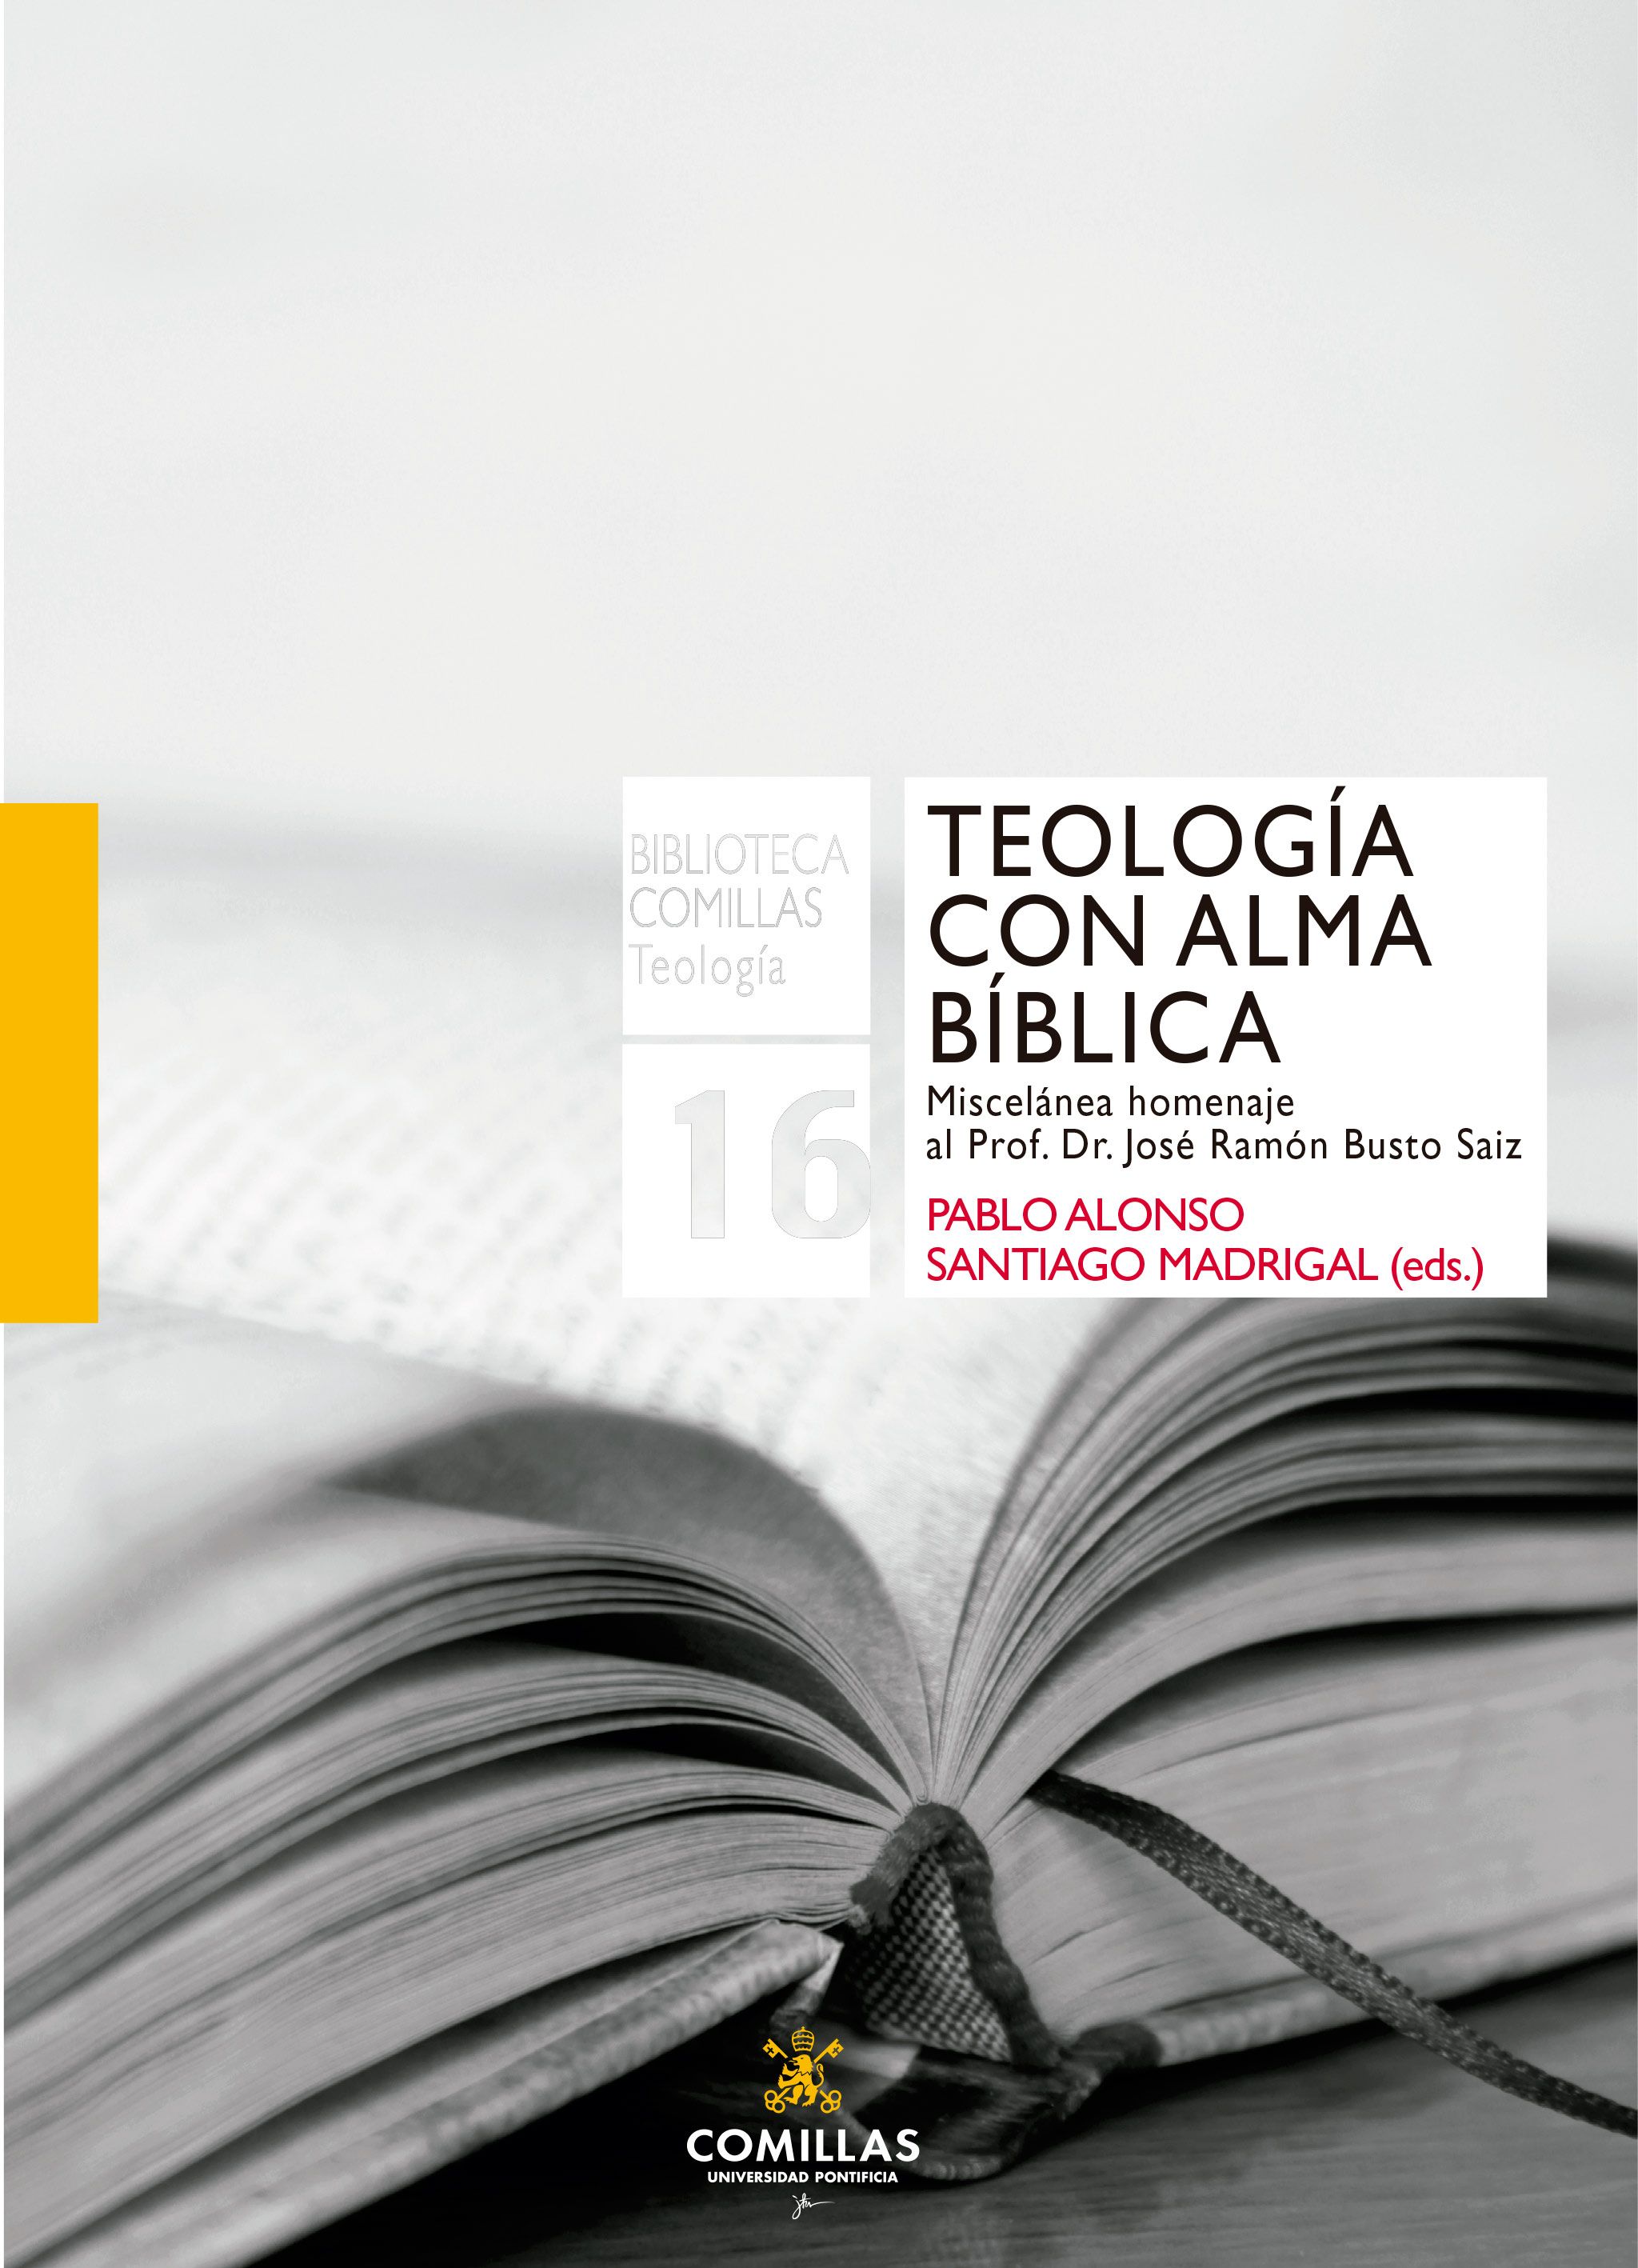 Imagen de portada del libro Teología con alma bíblica